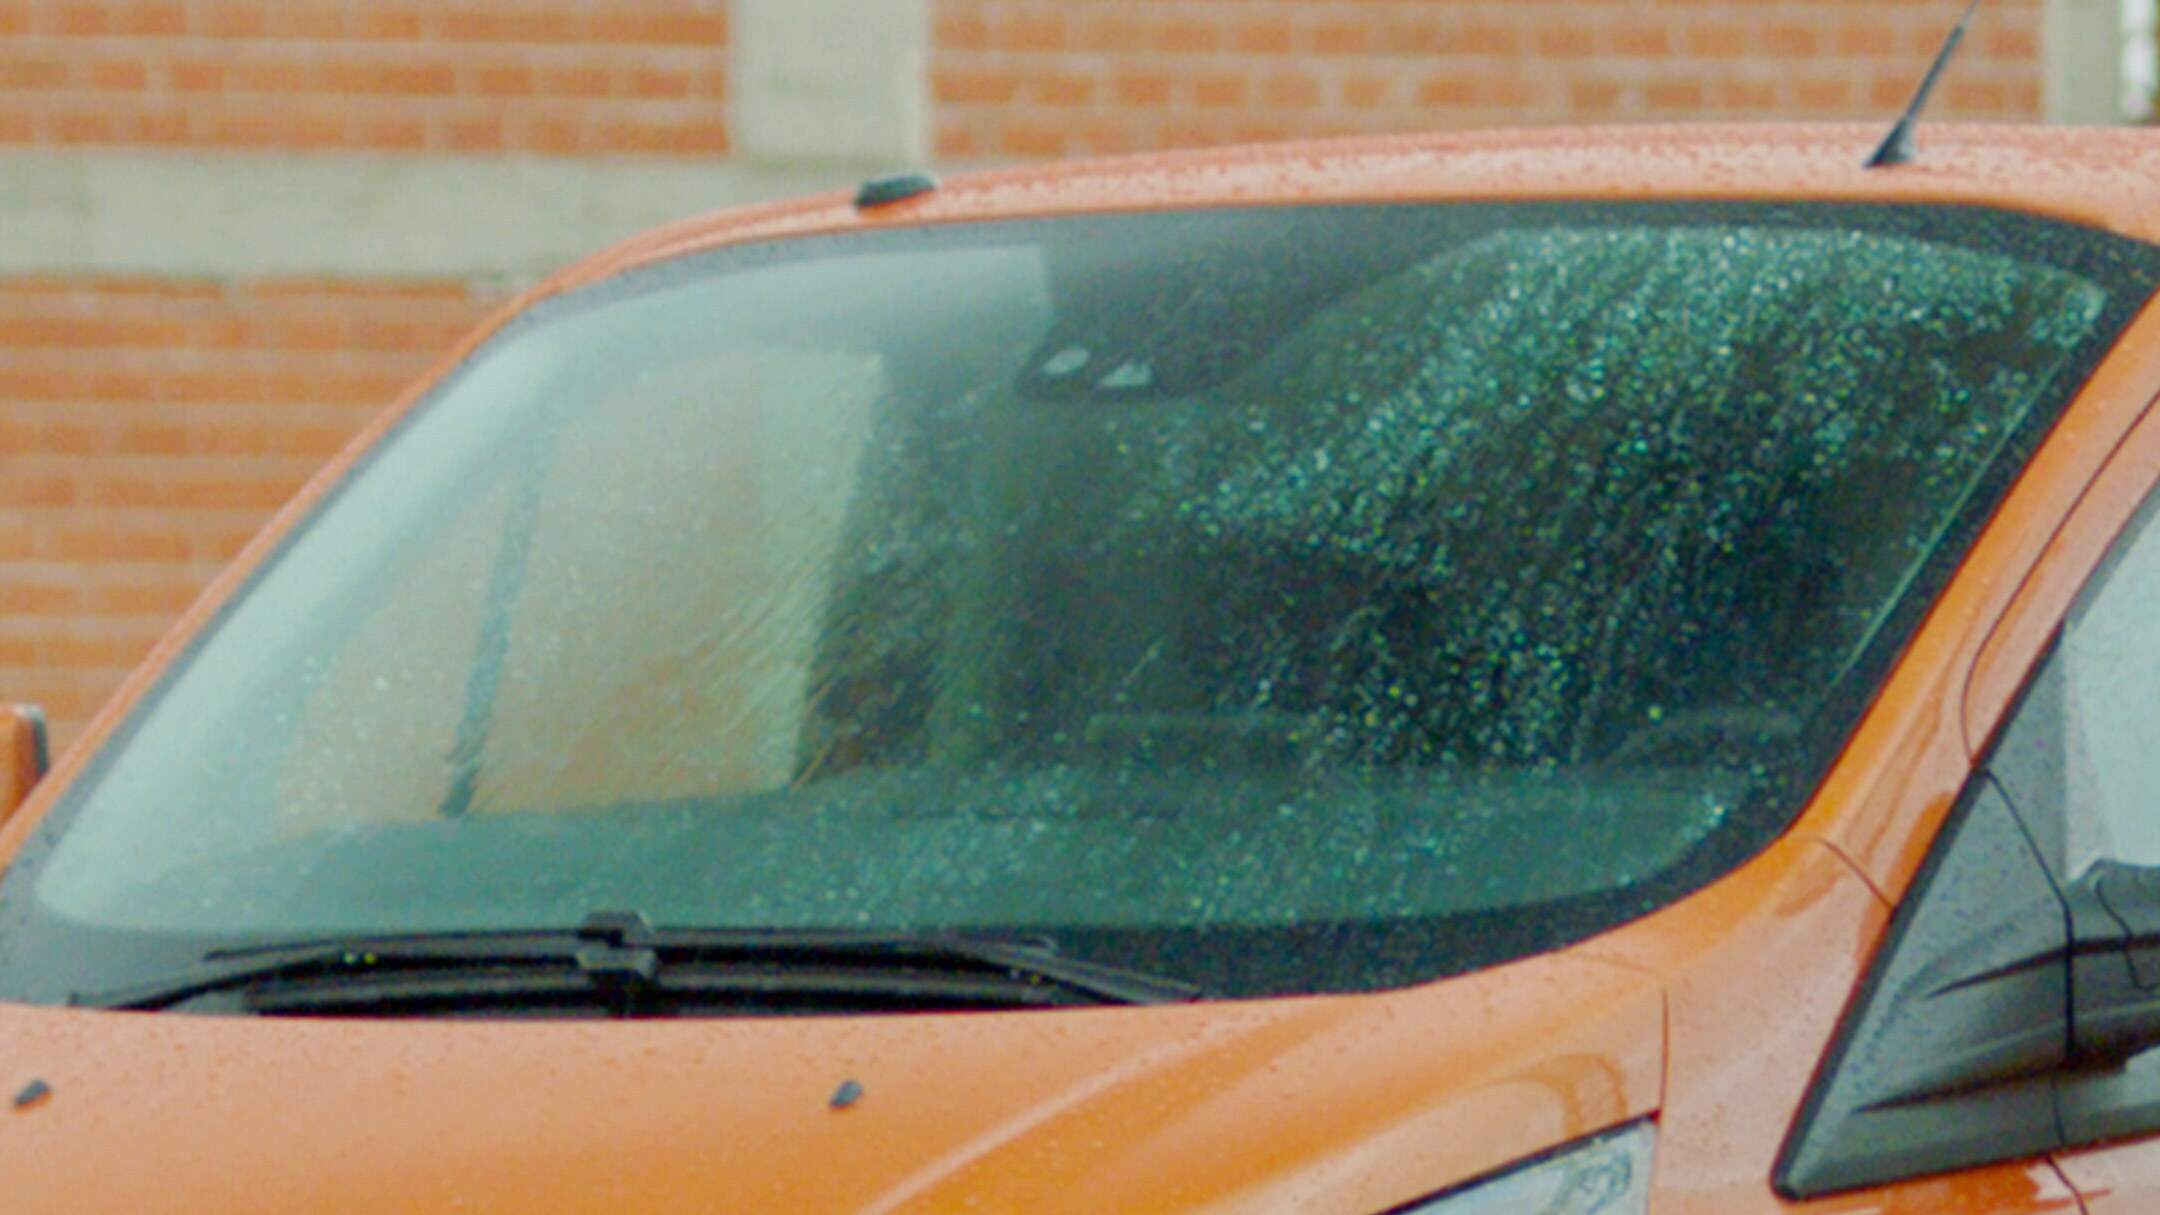 Ford Transit Custom couleur orange, vue du pare-brise en détail